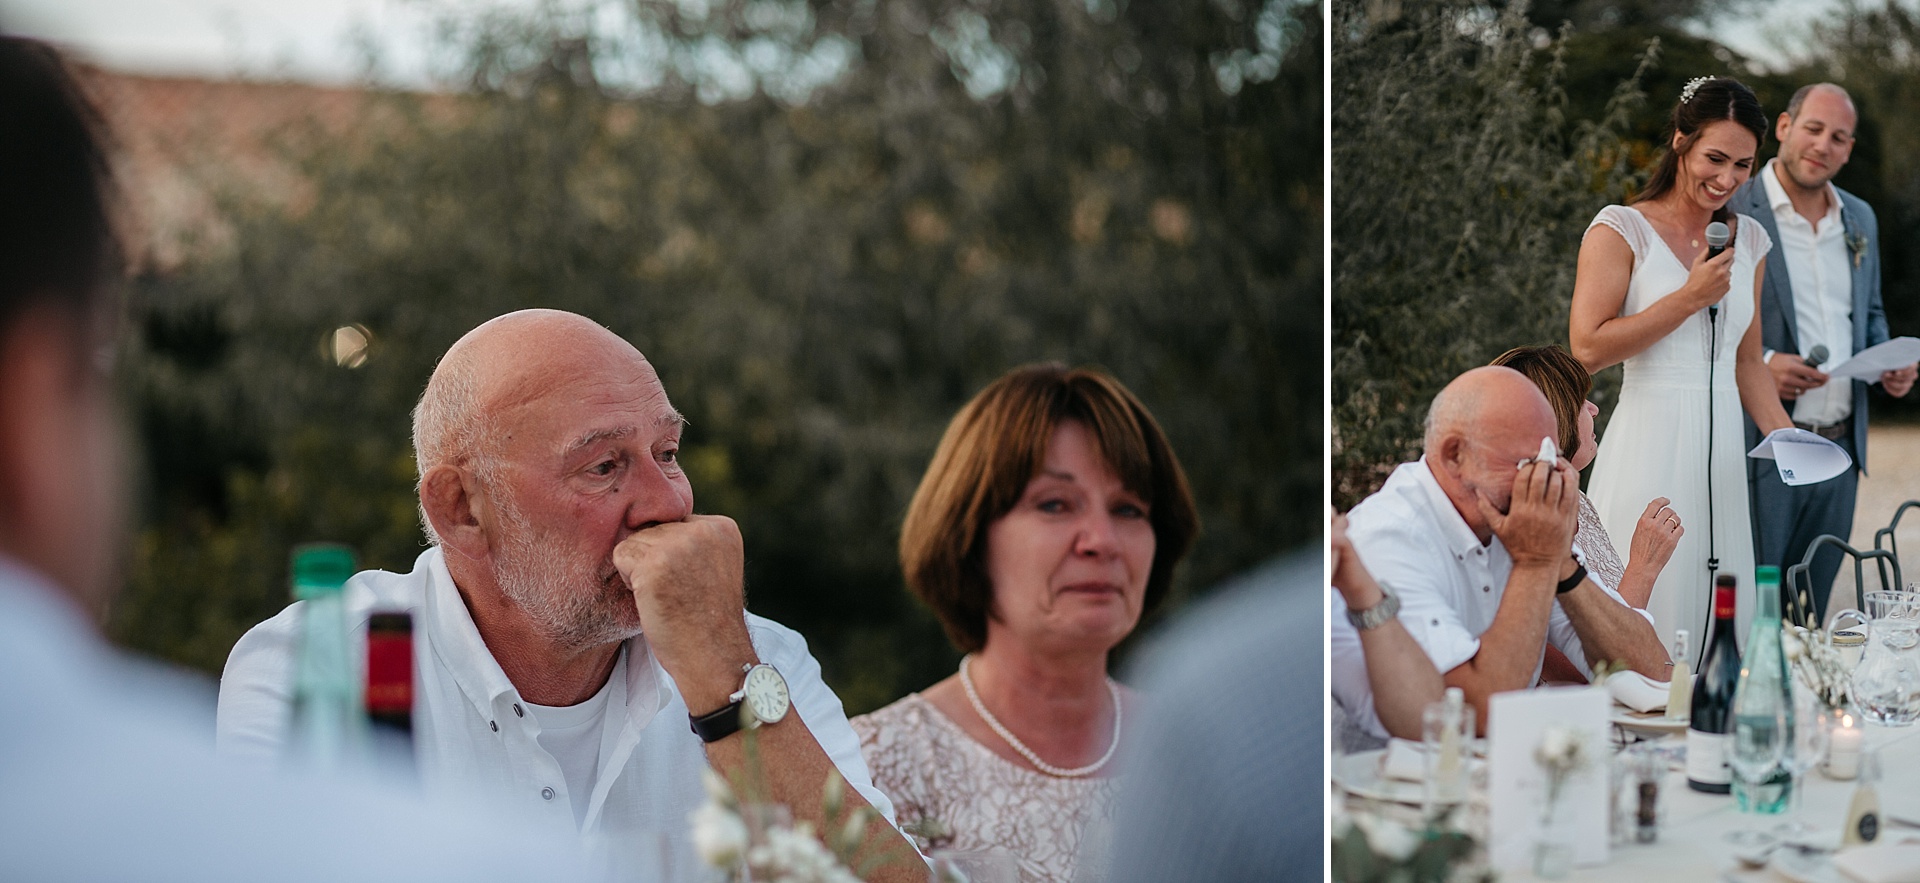 Traumhafte Hochzeit in der Provence. Die emotionale Rede des Brautpaares. Der Brautvater ist sichtlich gerührt.